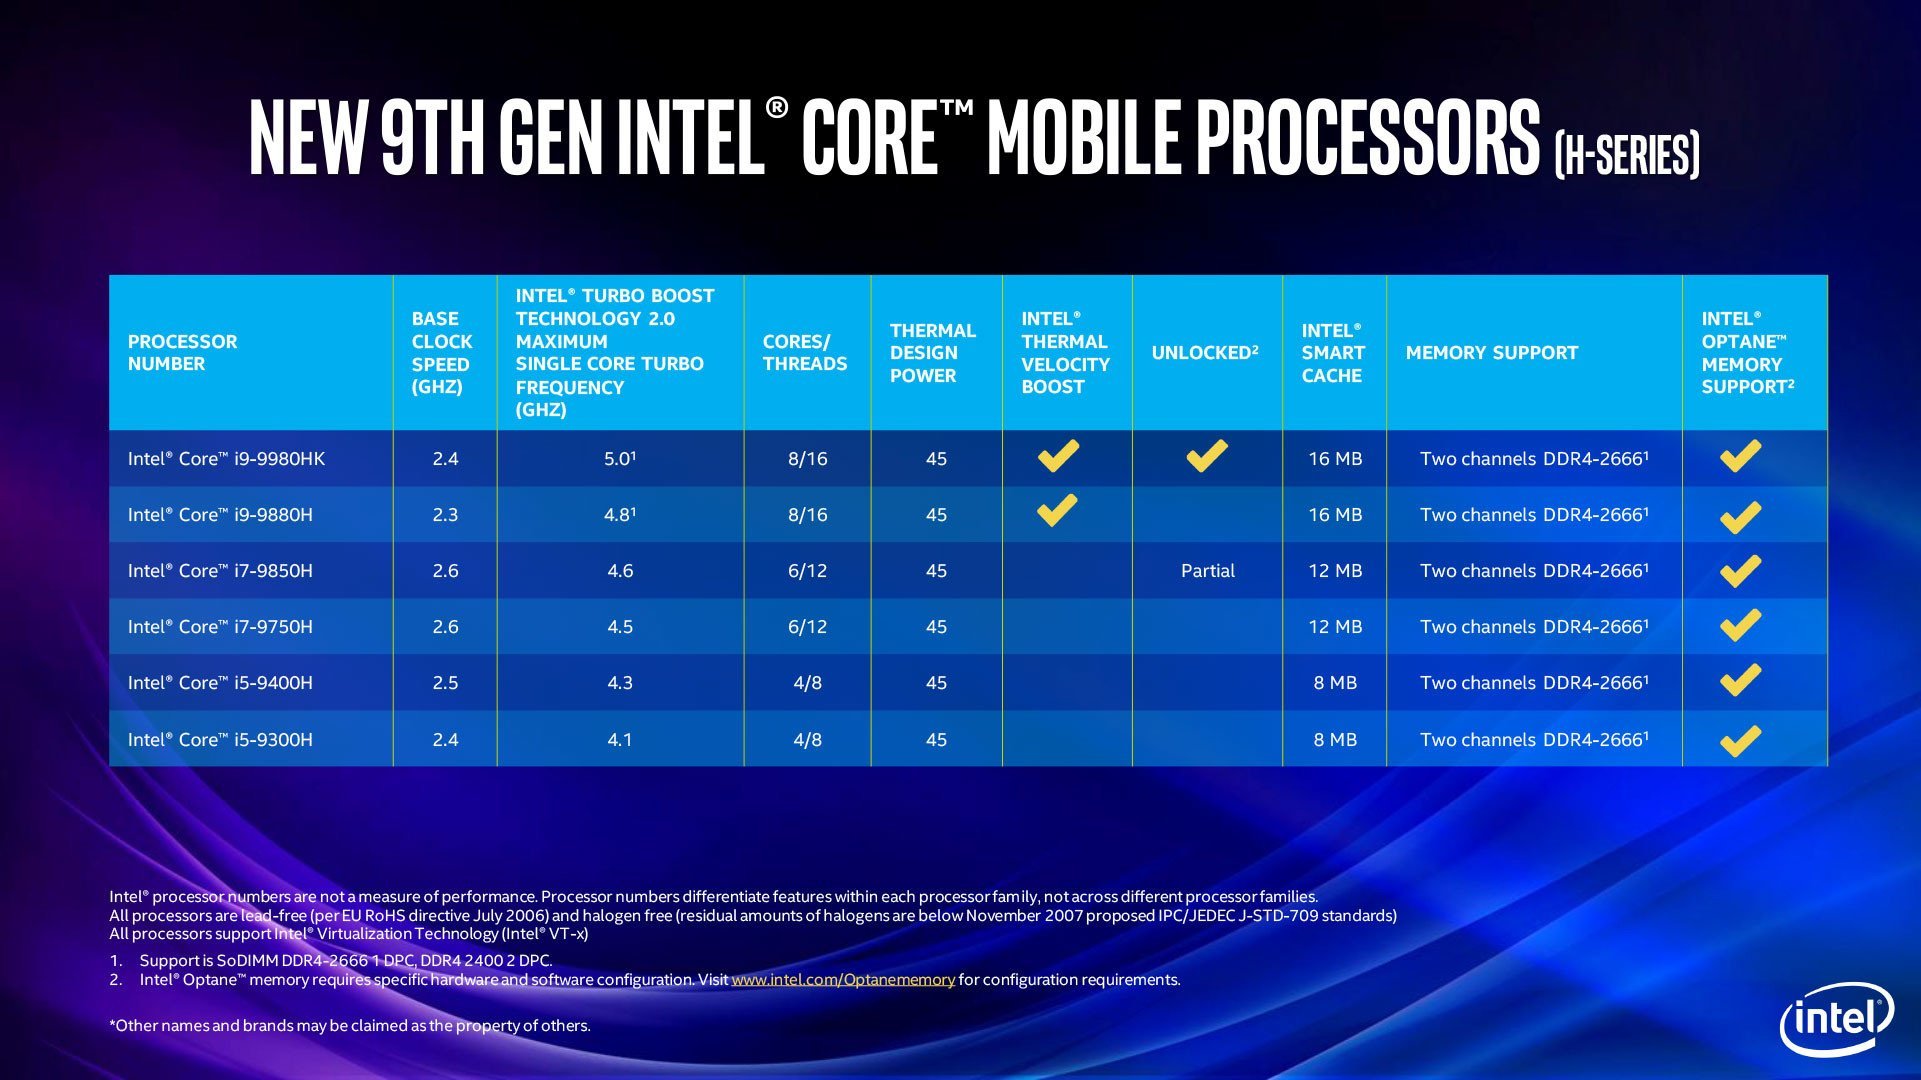 Image 5 : Intel étend sa gamme de processeurs desktop et mobiles